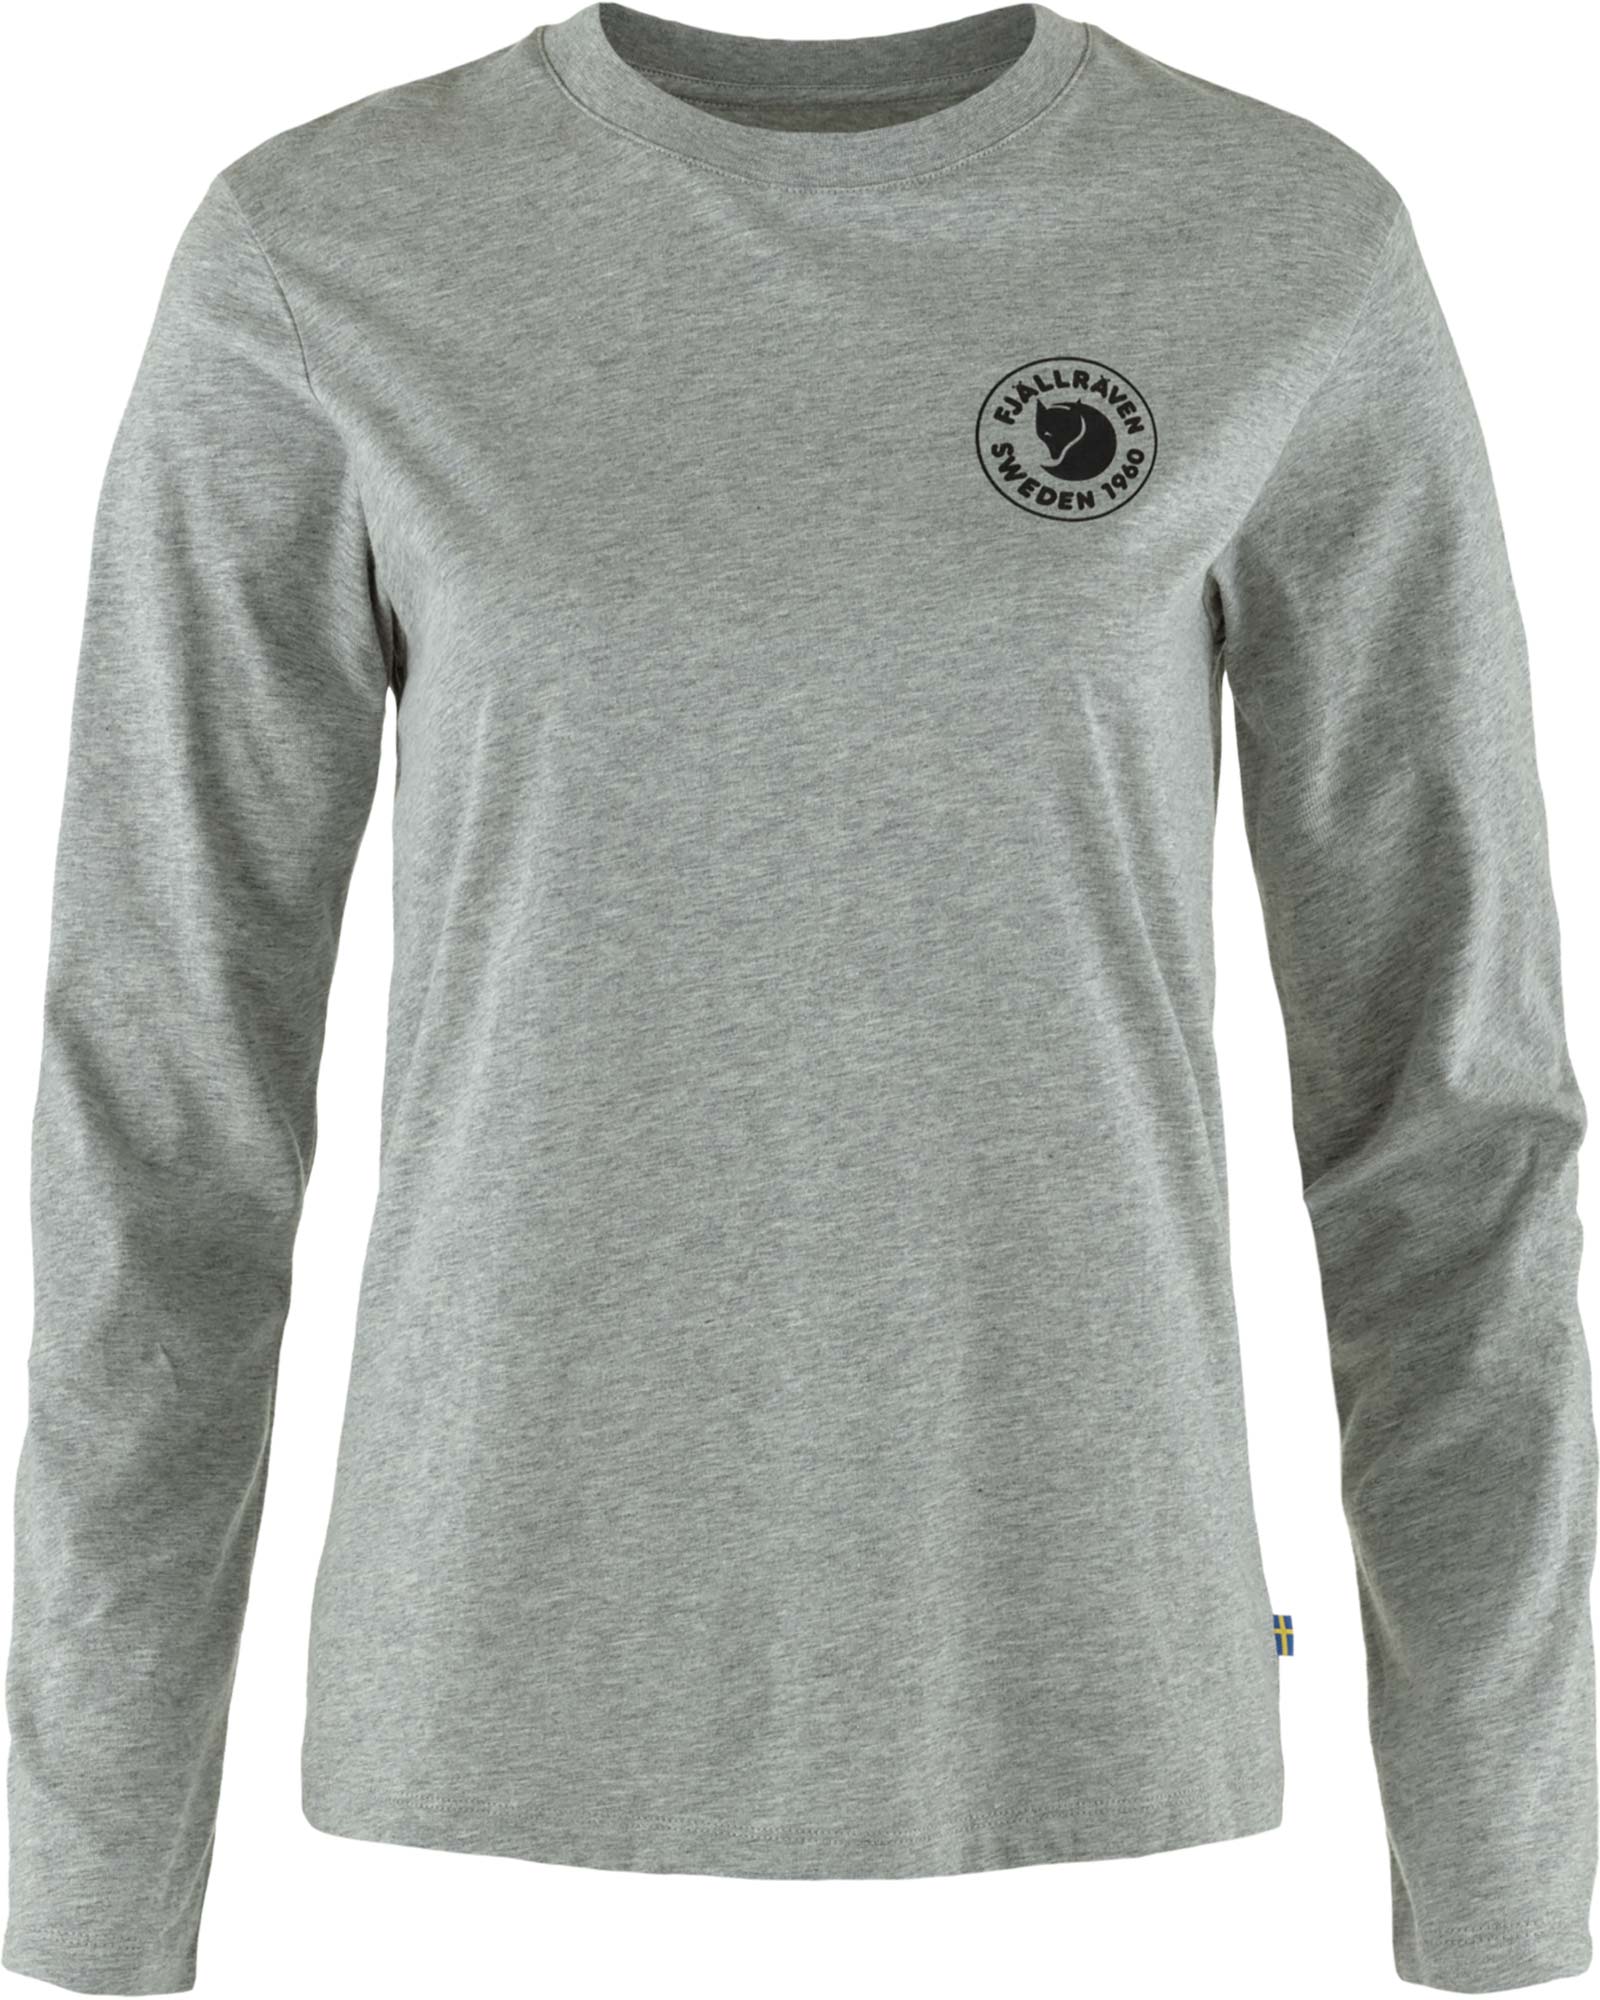 Fjallraven Women’s 1960 Logo Long Sleeved T Shirt - Grey Melange XS